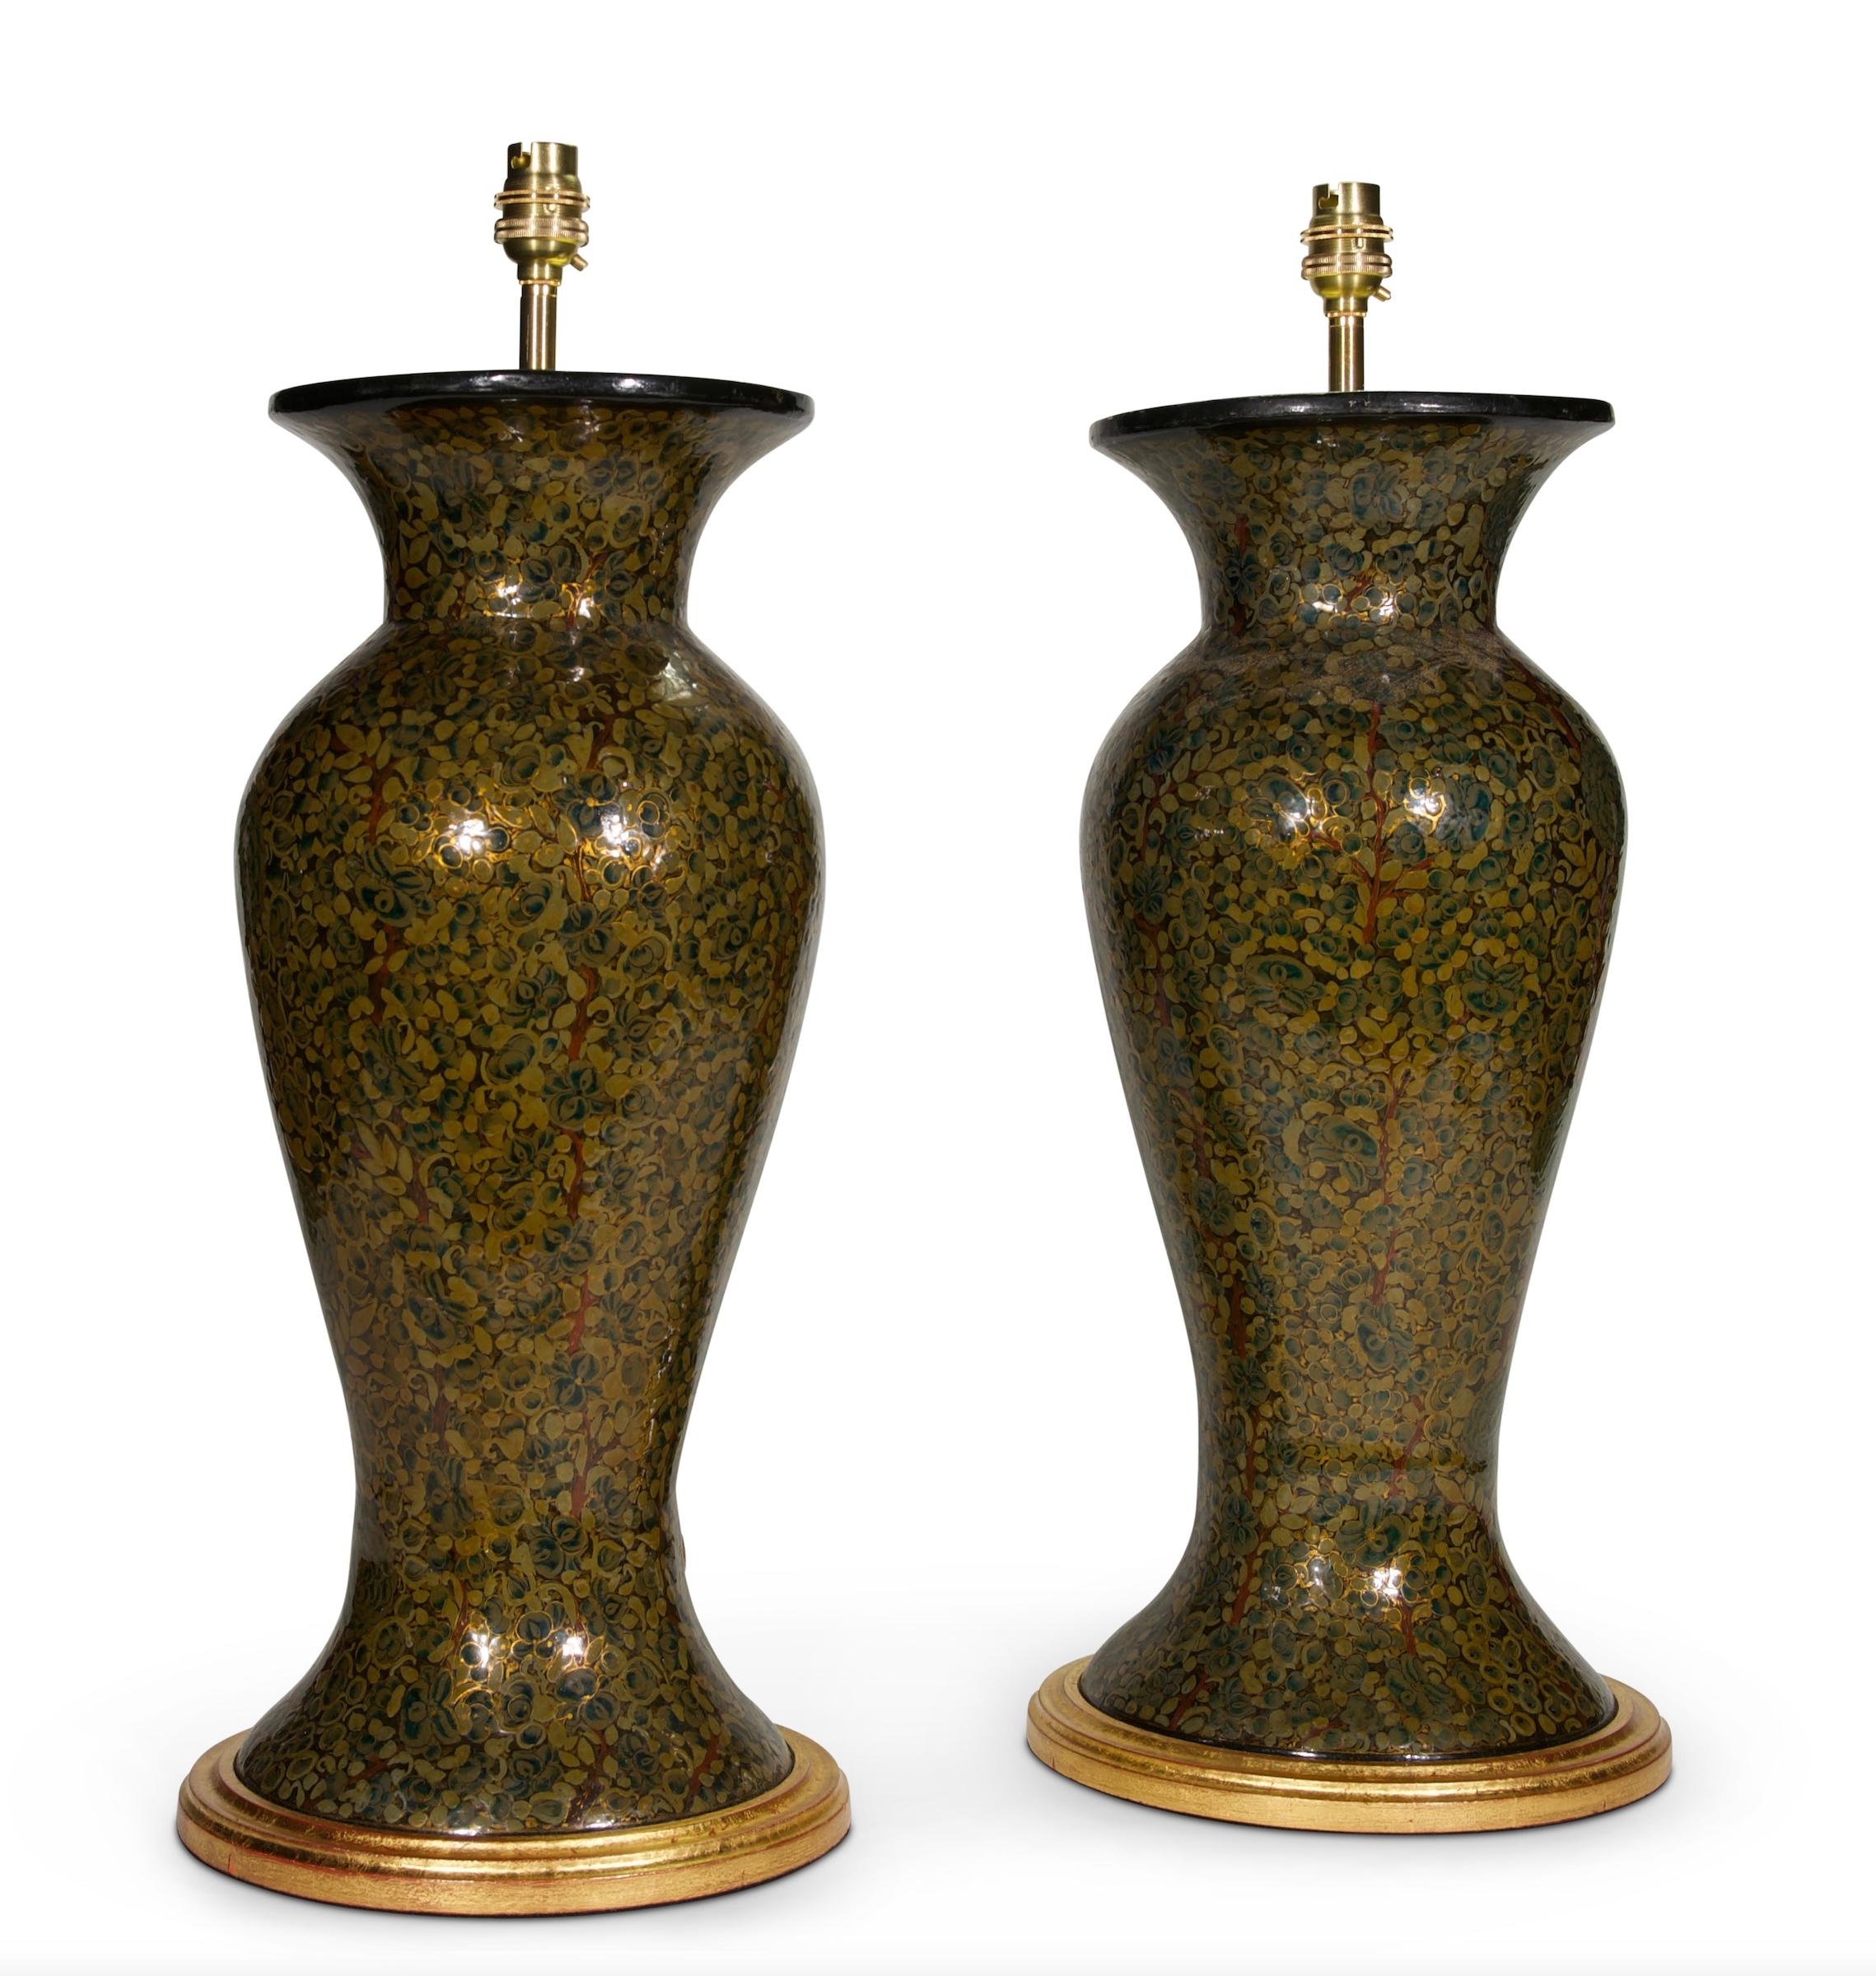 Une belle paire de vases balustres en laque du Cachemire du 20e siècle, décorés de motifs feuillagés dans des tons de vert avec des reflets dorés, maintenant montés comme lampes sur des bases tournées dorées à la main.

Dimensions : hauteur de la